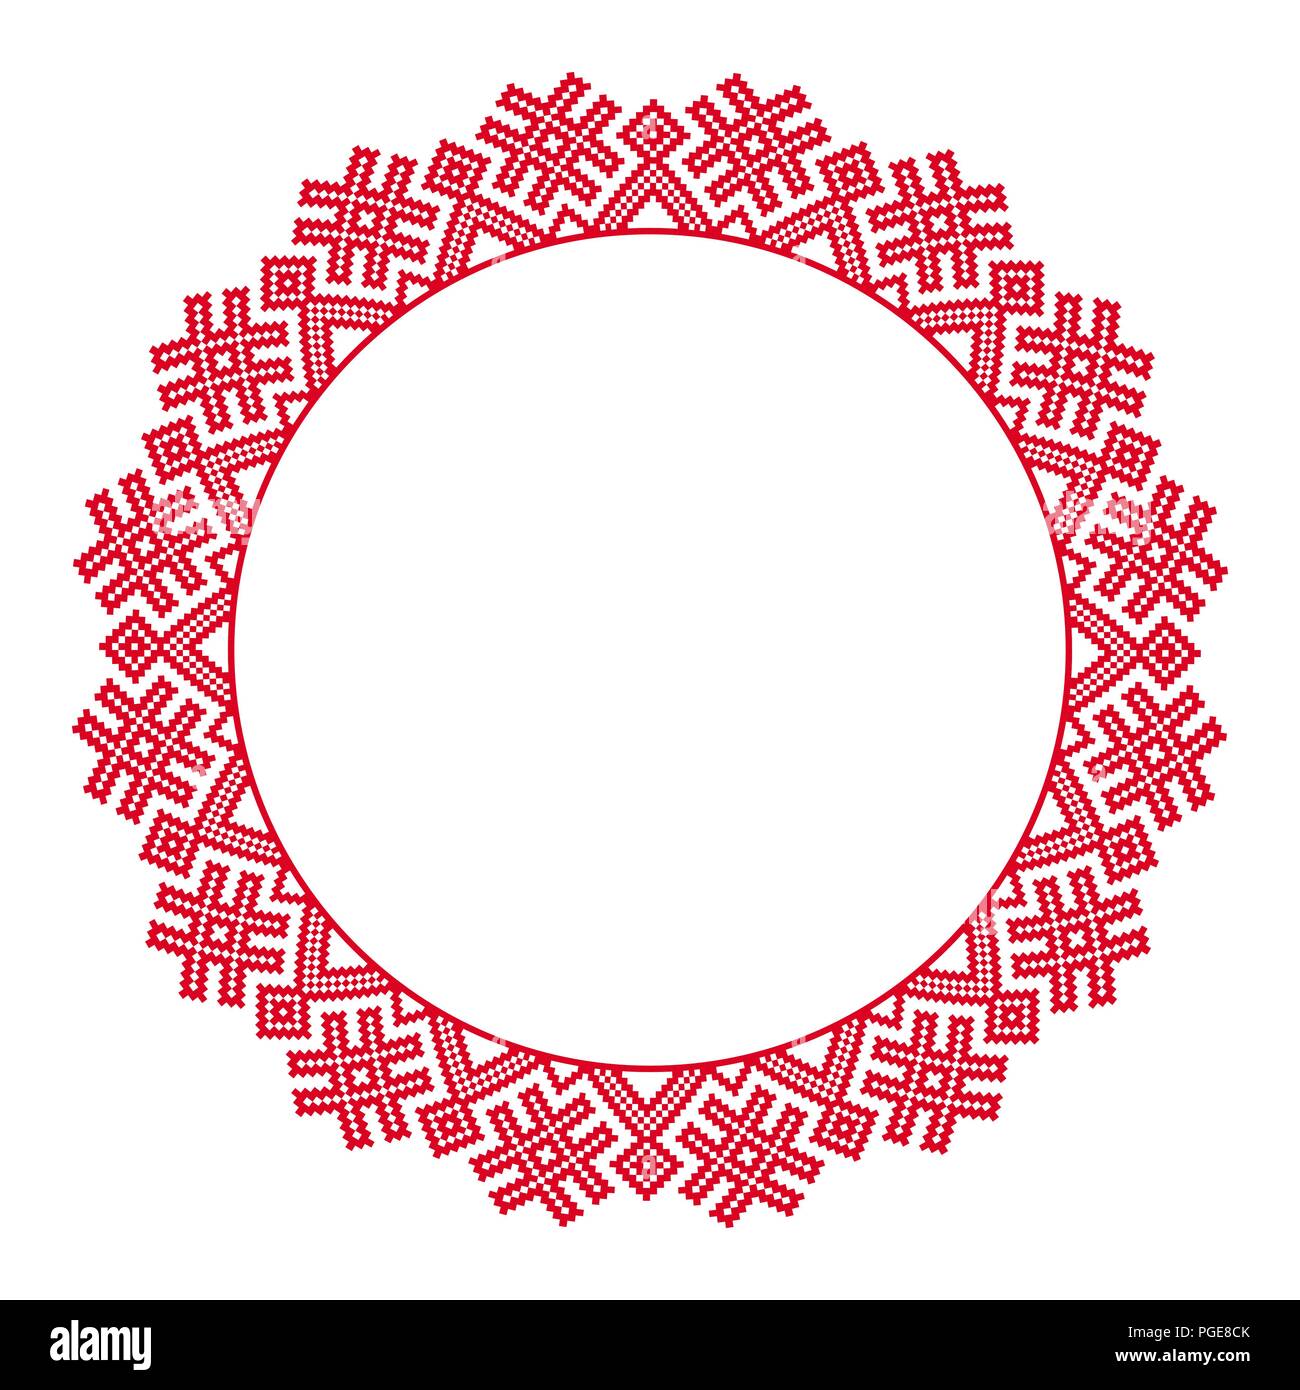 Broderie ronde traditionnelle. Vector illustration de ronde ethnique motif brodé géométrique pour votre conception Illustration de Vecteur